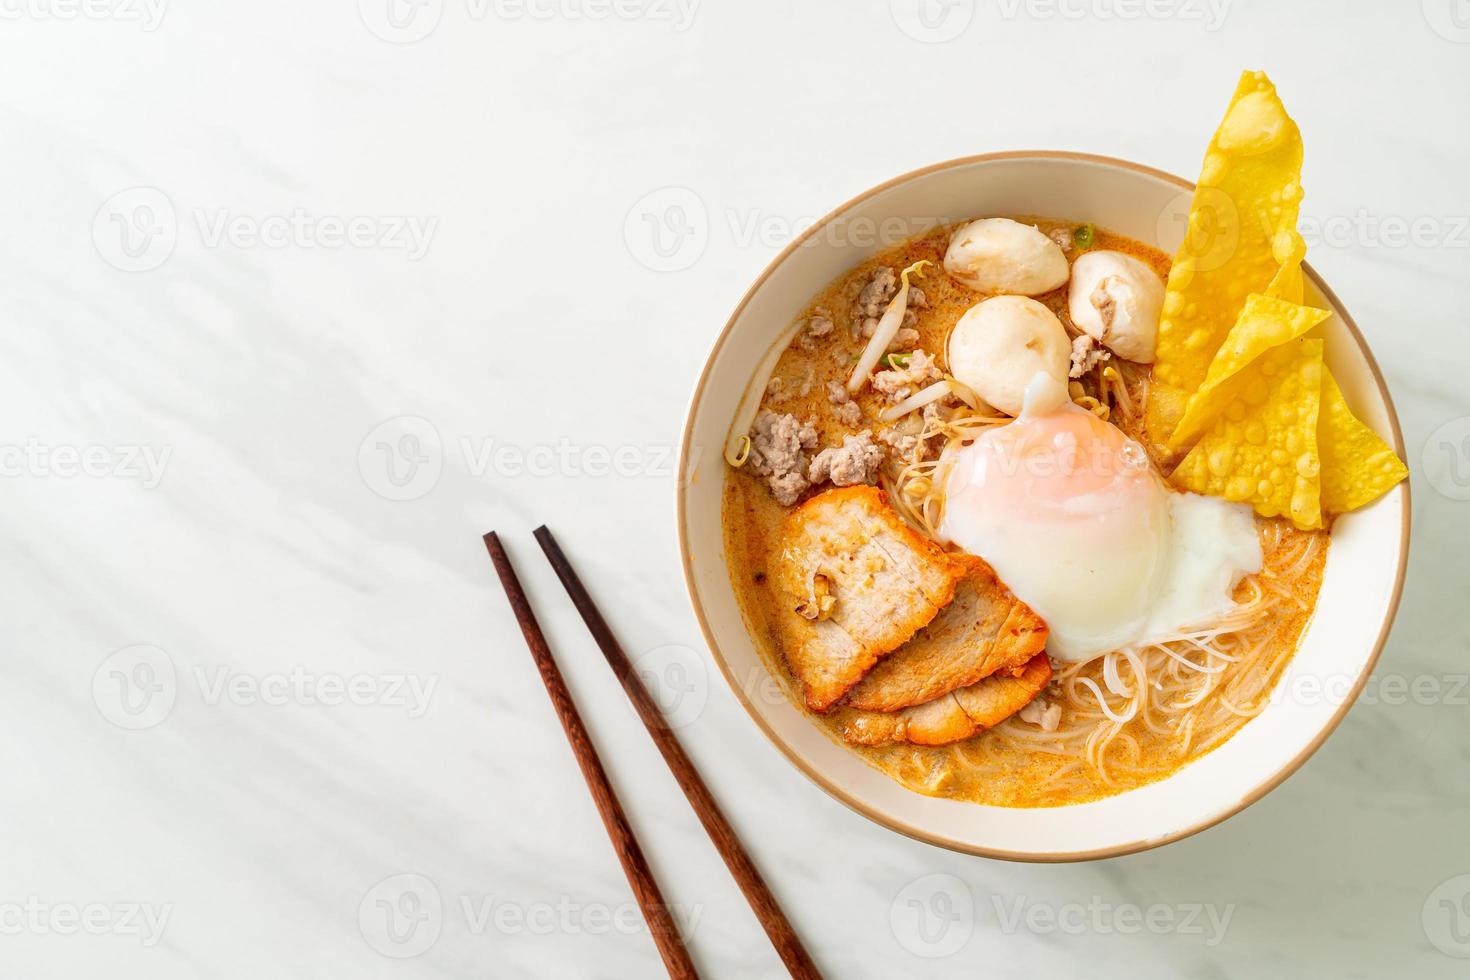 rijstvermicelli noedels met gehaktbal in pikante soep foto